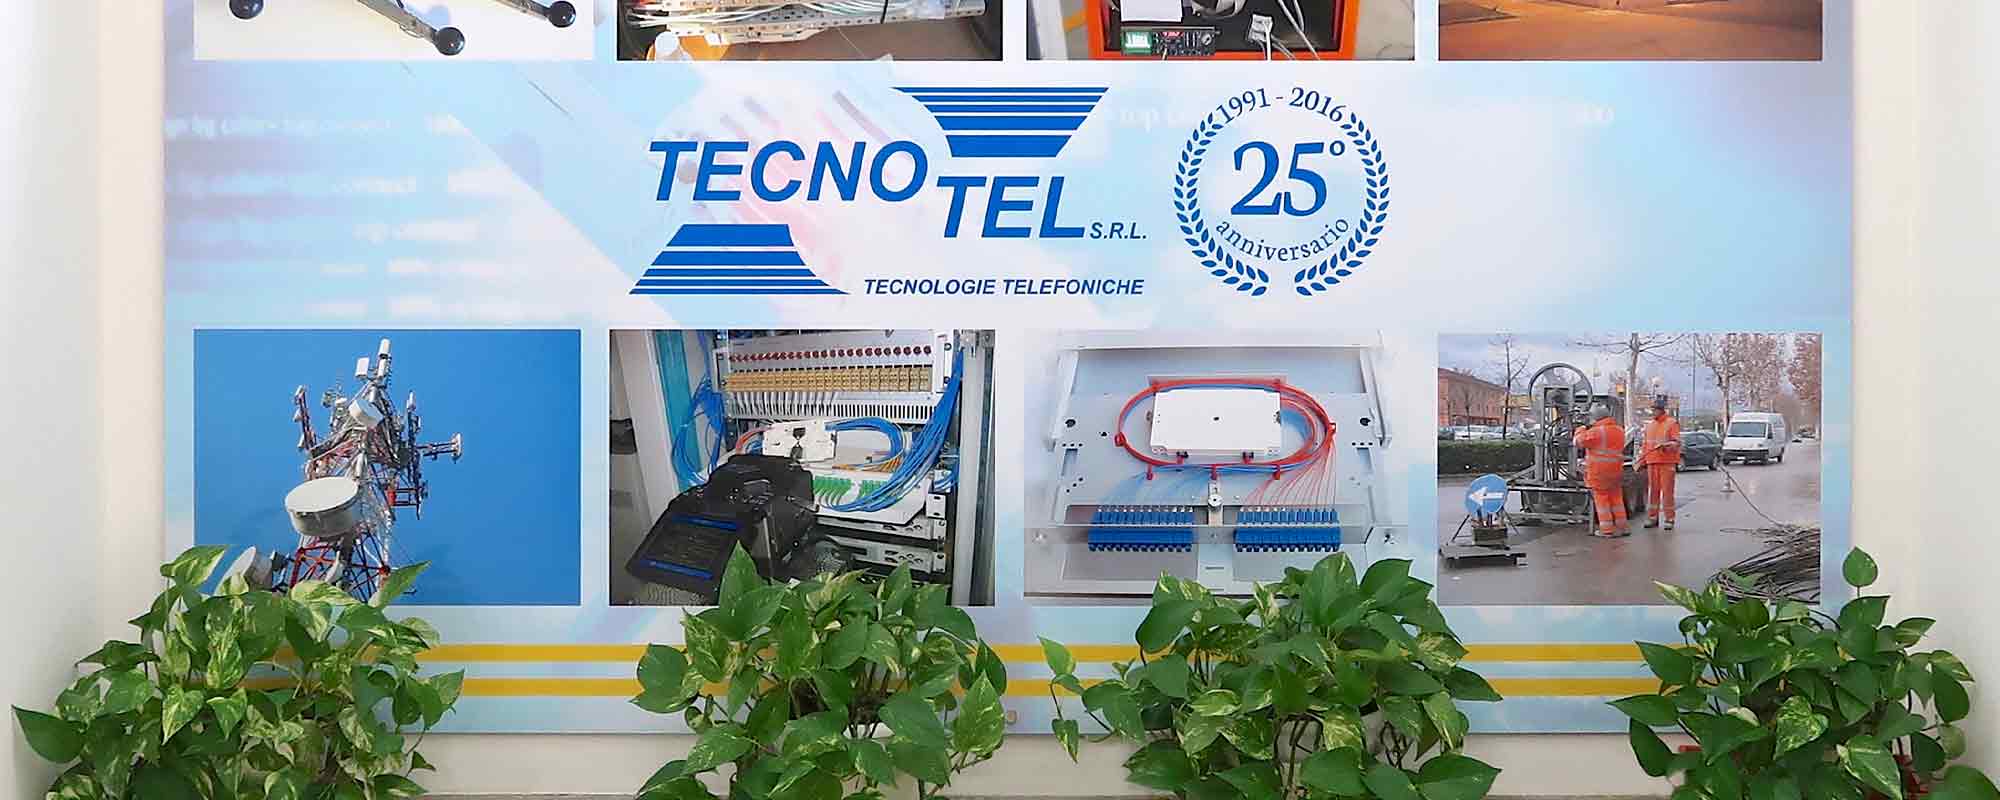 Dal 1991, tecnologie, prodotti e servizi per le telecomunicazioni